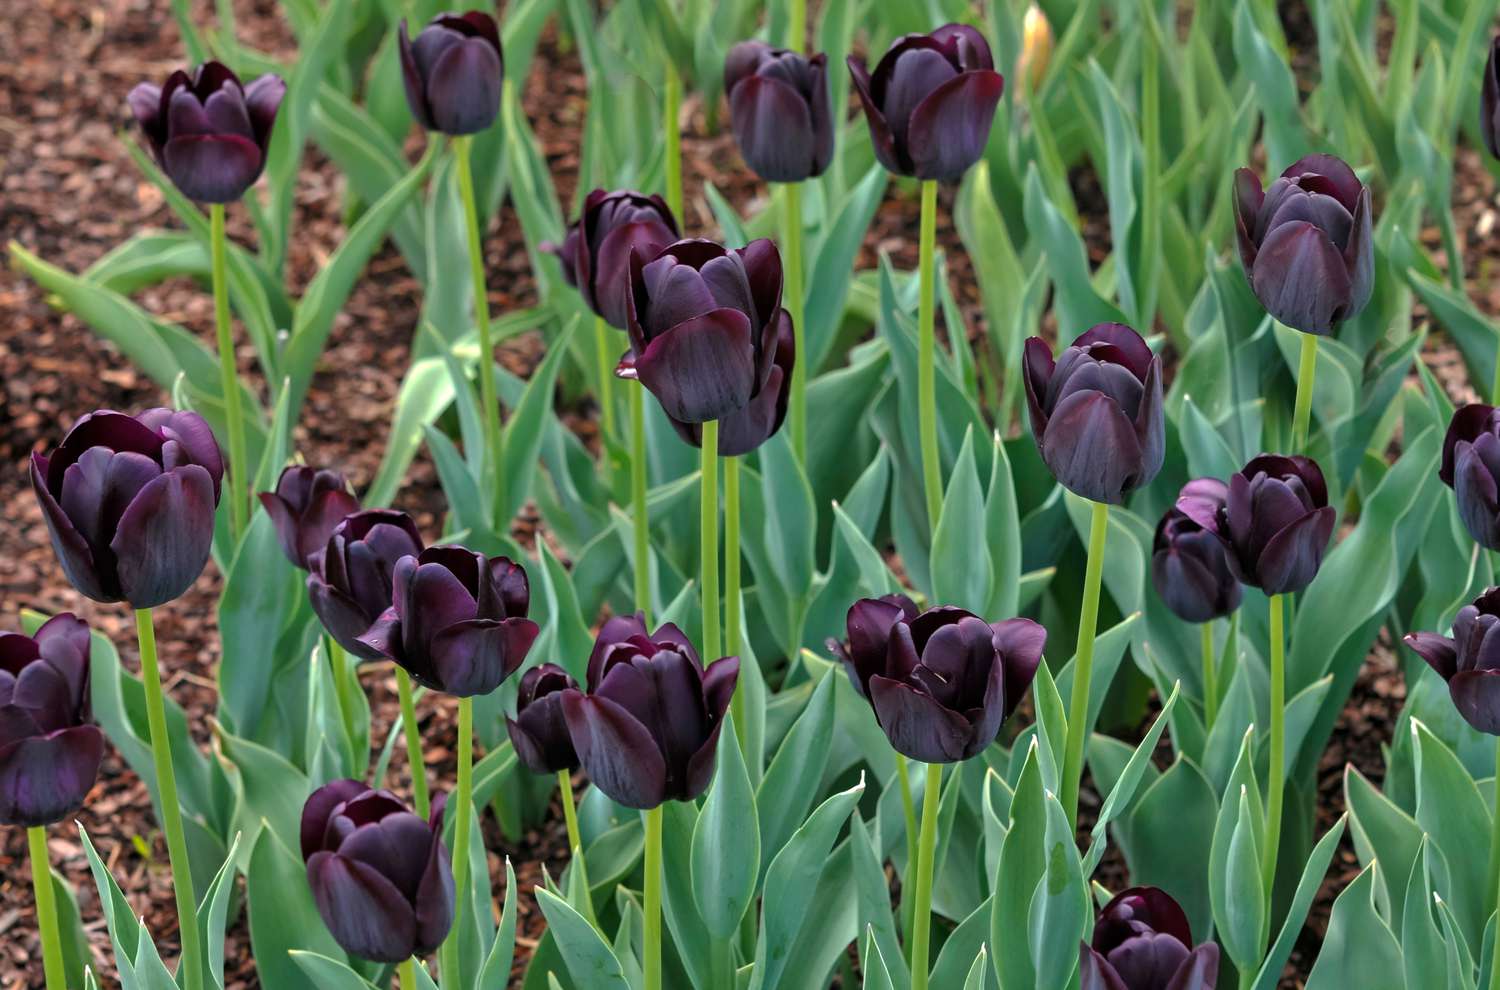 Reina de la noche tulipanes con flores negras en jardín